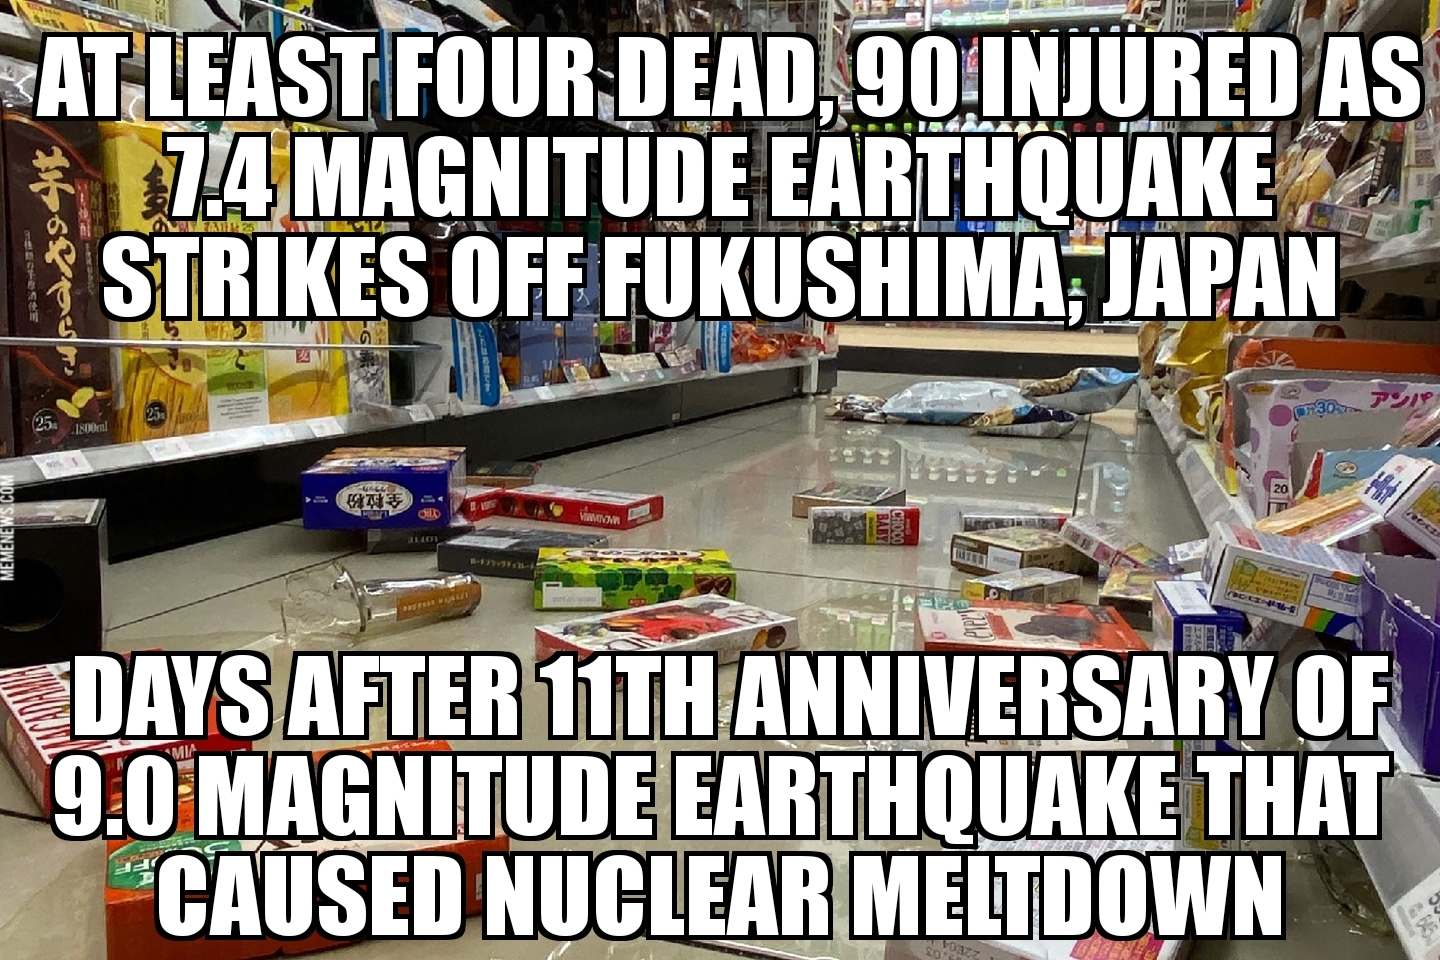 Fukushima earthquake